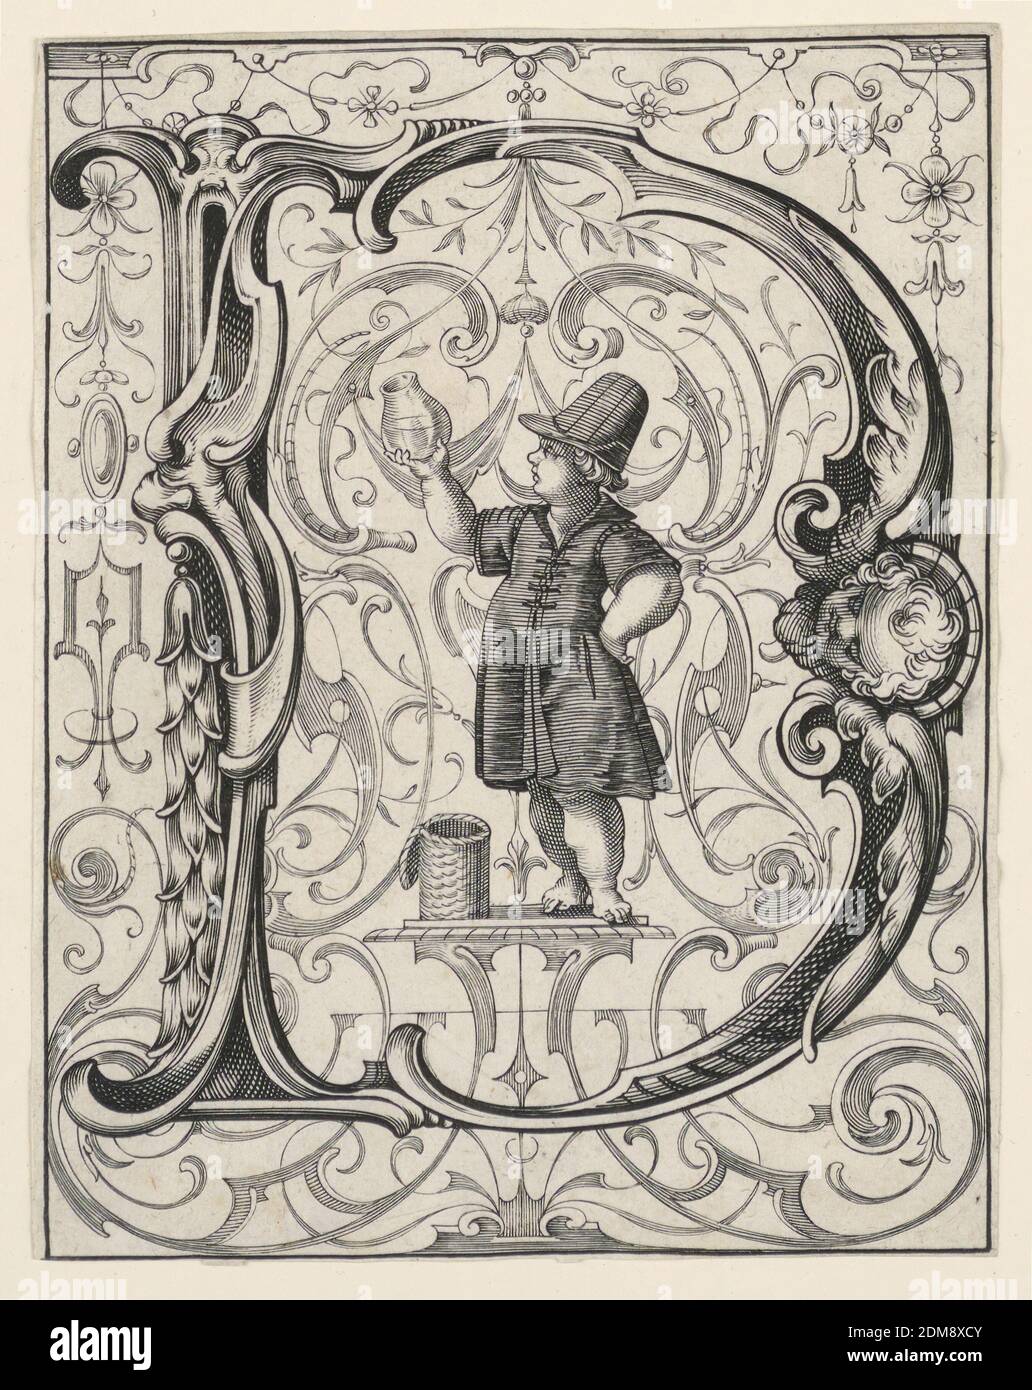 Panneau avec la lettre « D » du « Newes ABC Büechlein », Lukas Kilian, allemand, 1579 – 1637, engravant sur papier blanc cassé, UN garçon lève une bouteille avec un fluide, qu'il a pris dans un panier., Augsberg, Allemagne, 1627, Imprimer Banque D'Images